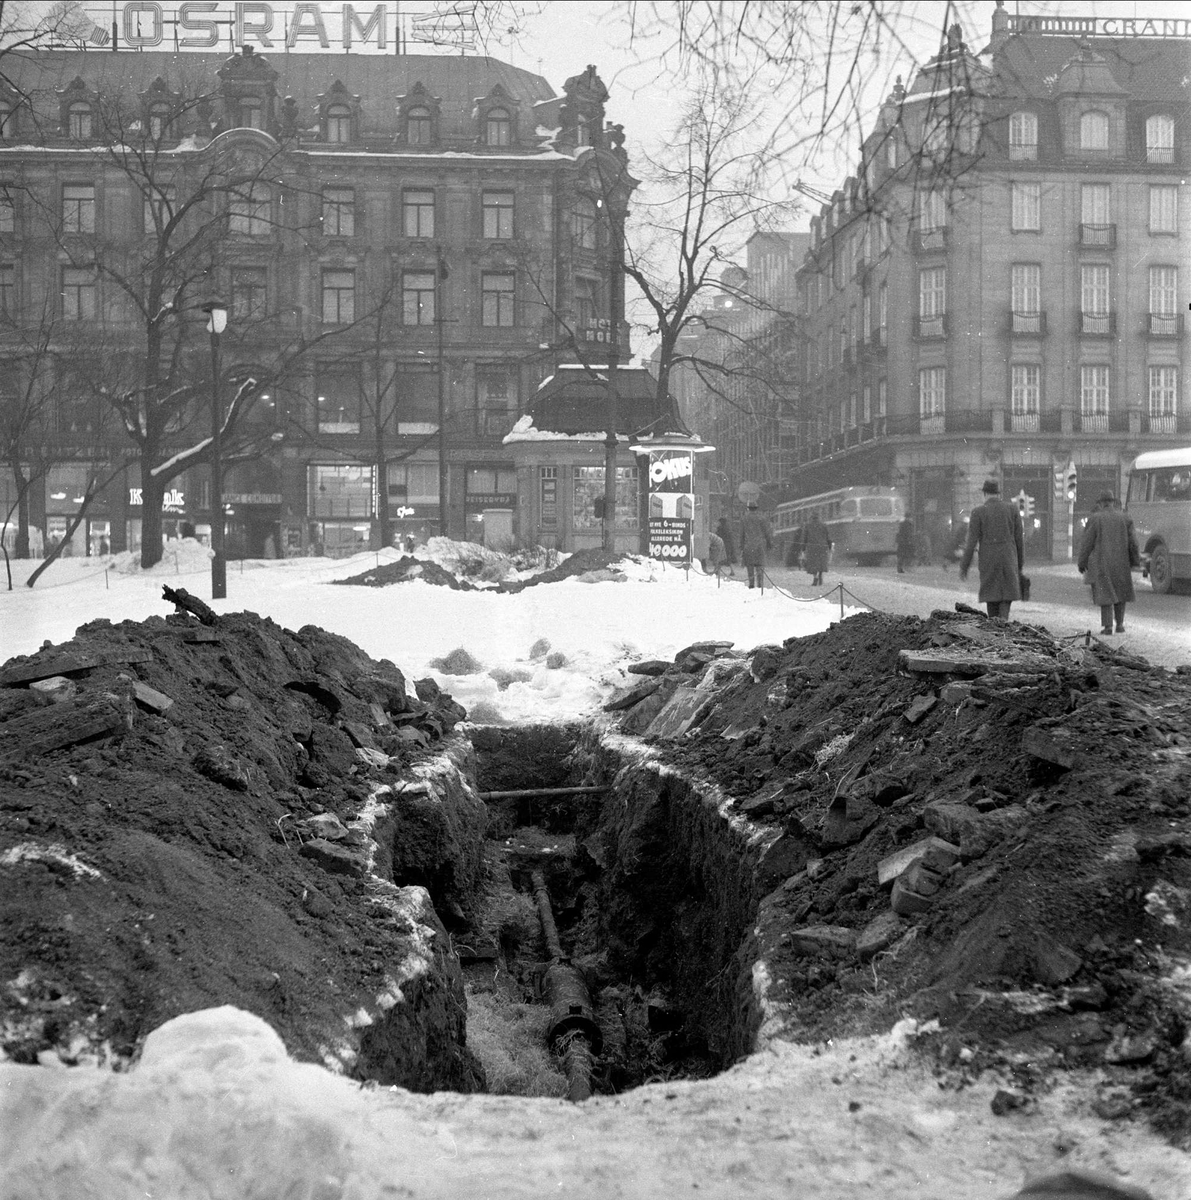 Snø i byen, Oslo, februar, 1959. Karl Johans gate i bakgrunnen.